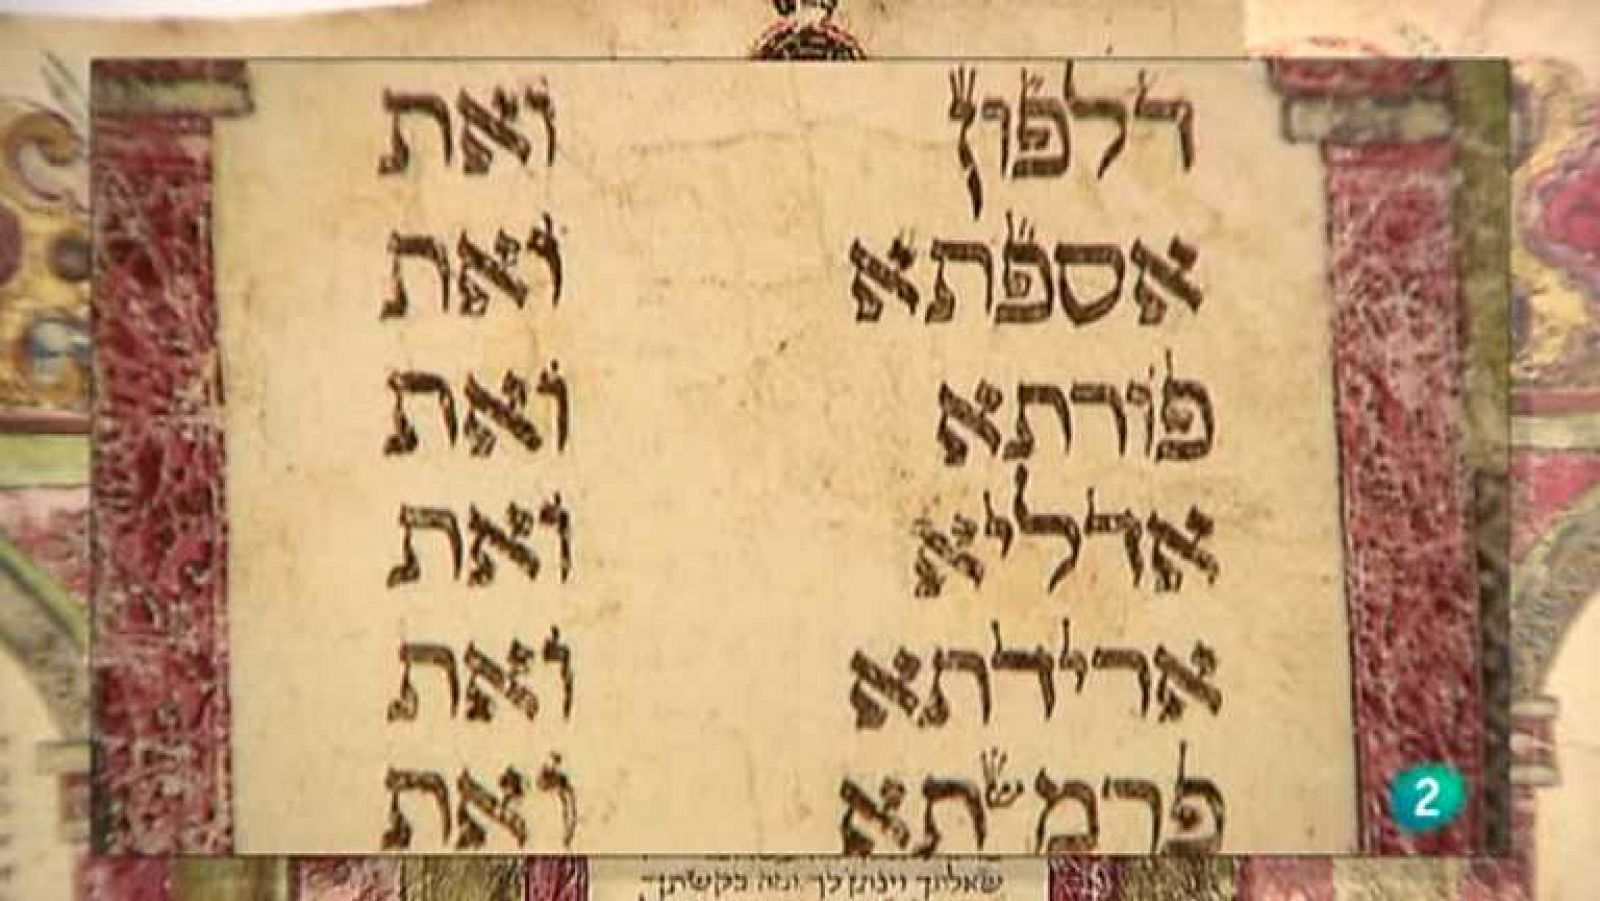 Shalom - Hoy es Purim